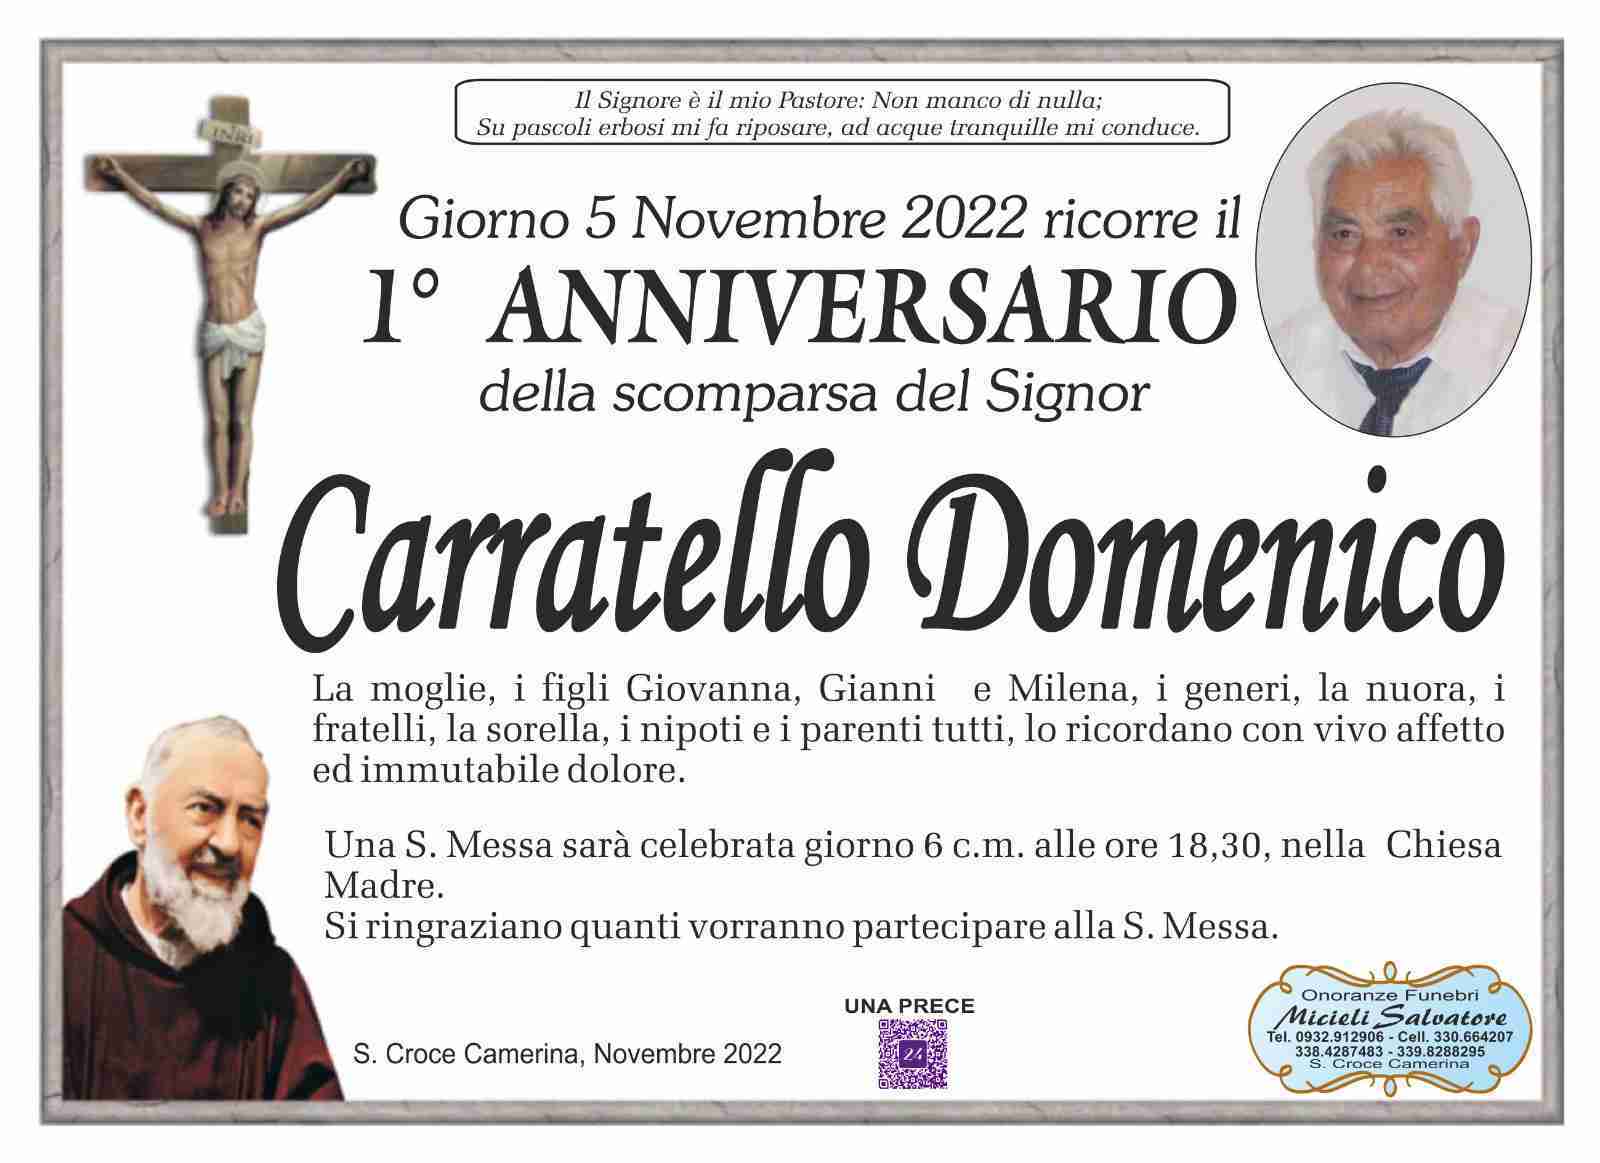 Domenico Carratello